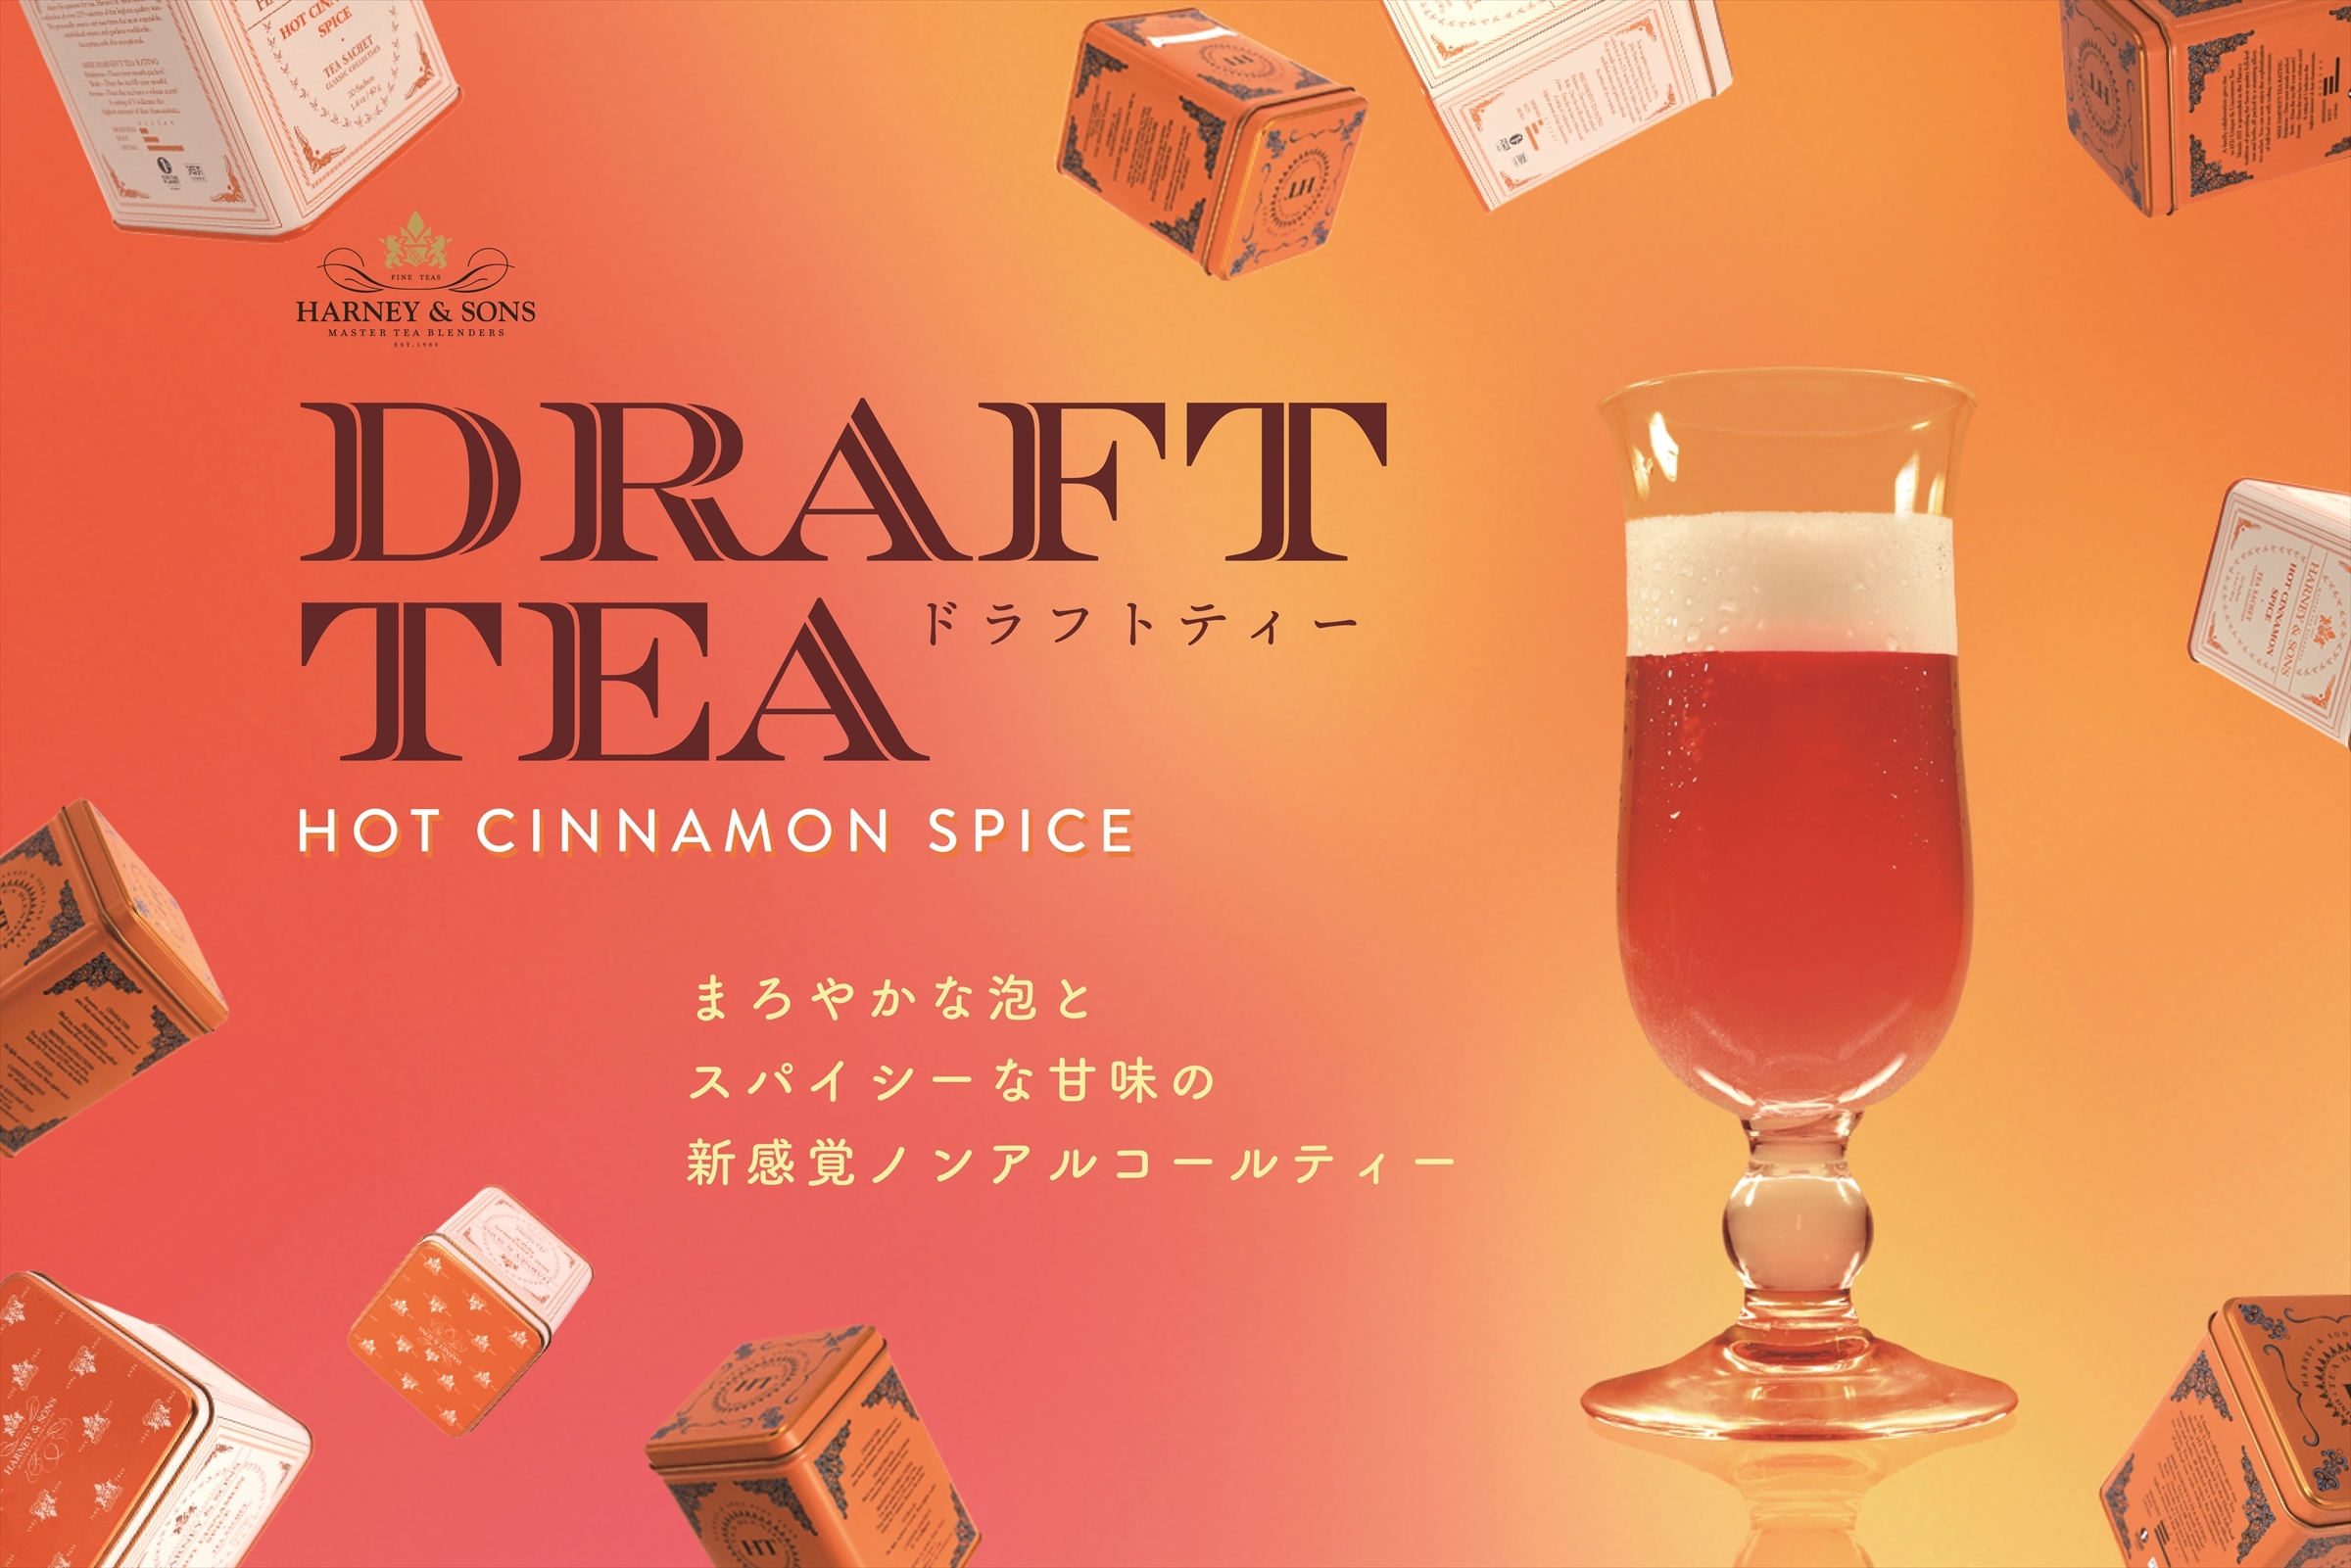 HARNEY & SONSのシグネチャー・ブレンド
“Hot Cinnamon Spice”を使用した新感覚アイスティー
「ドラフトティー」を販売開始